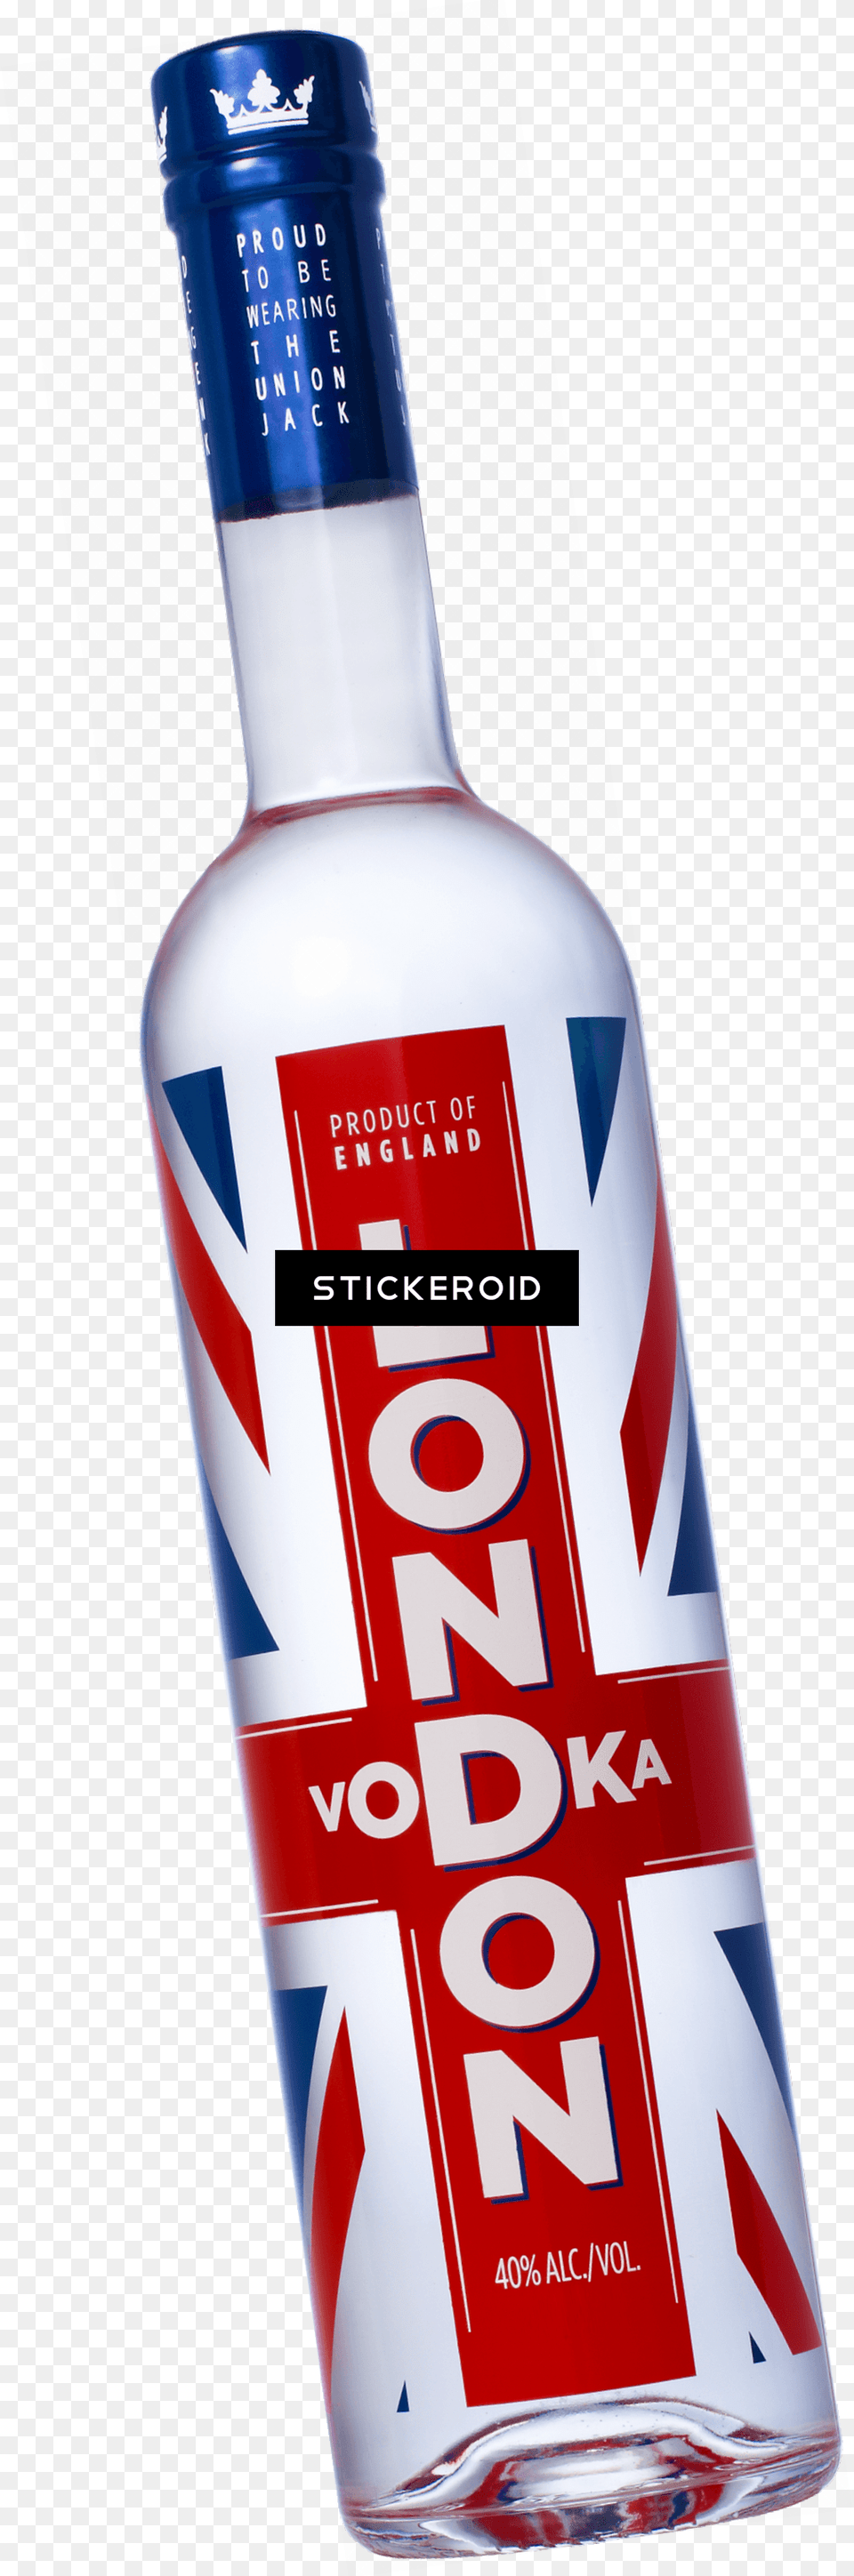 London Vodka London Vodka, Alcohol, Beverage, Liquor, Beer Free Transparent Png